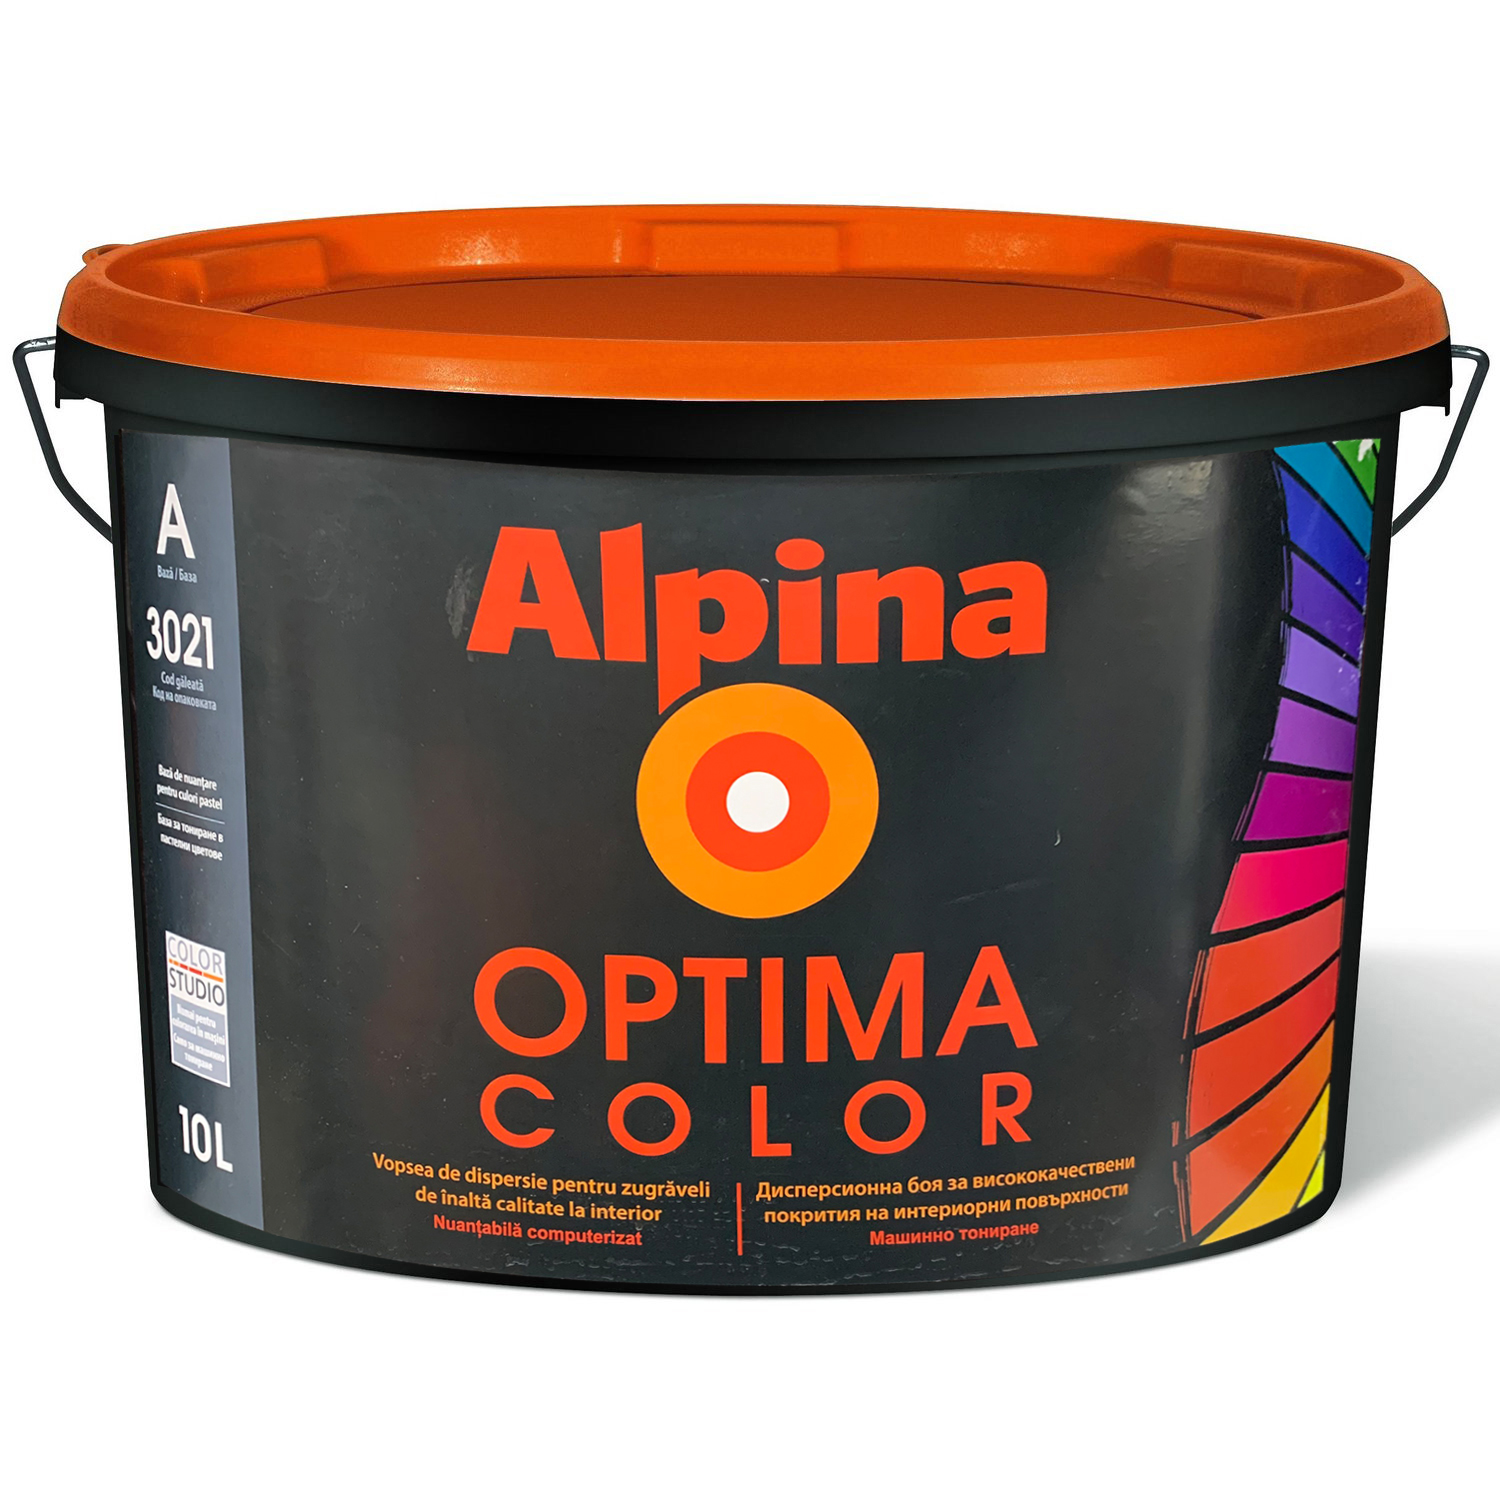 Водоэмульсии Optima Color Baza A 10l alpina РУМЫНИЯ